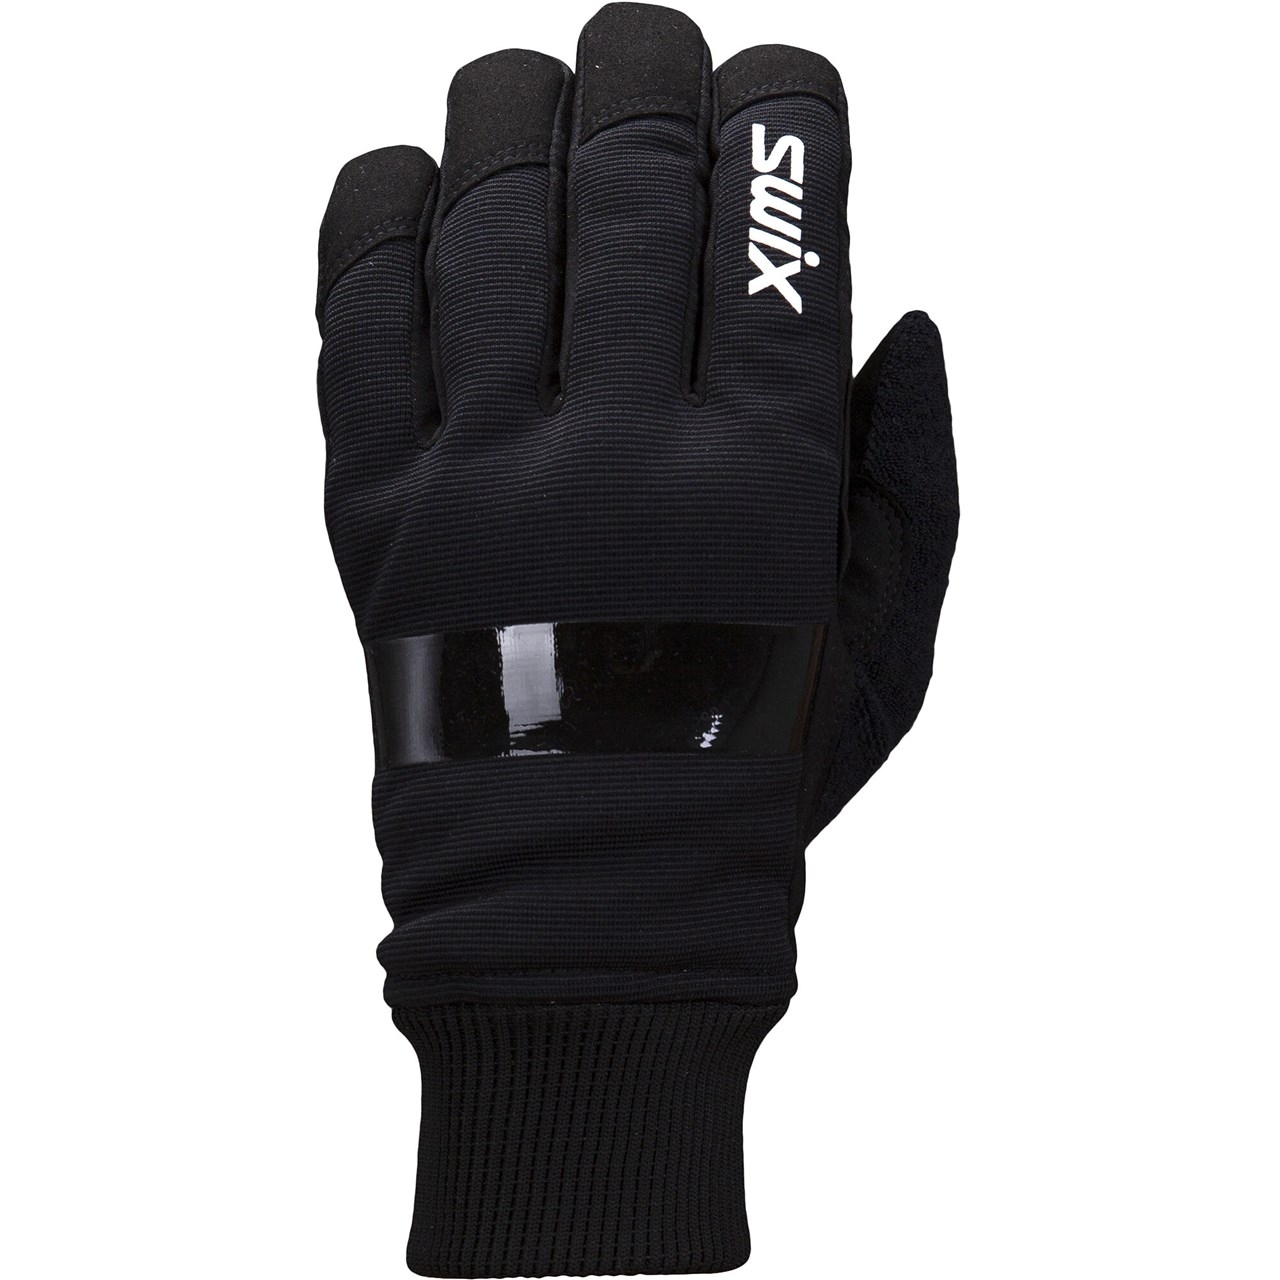 Productfoto van Swix Endure Handschoenen - Zwart